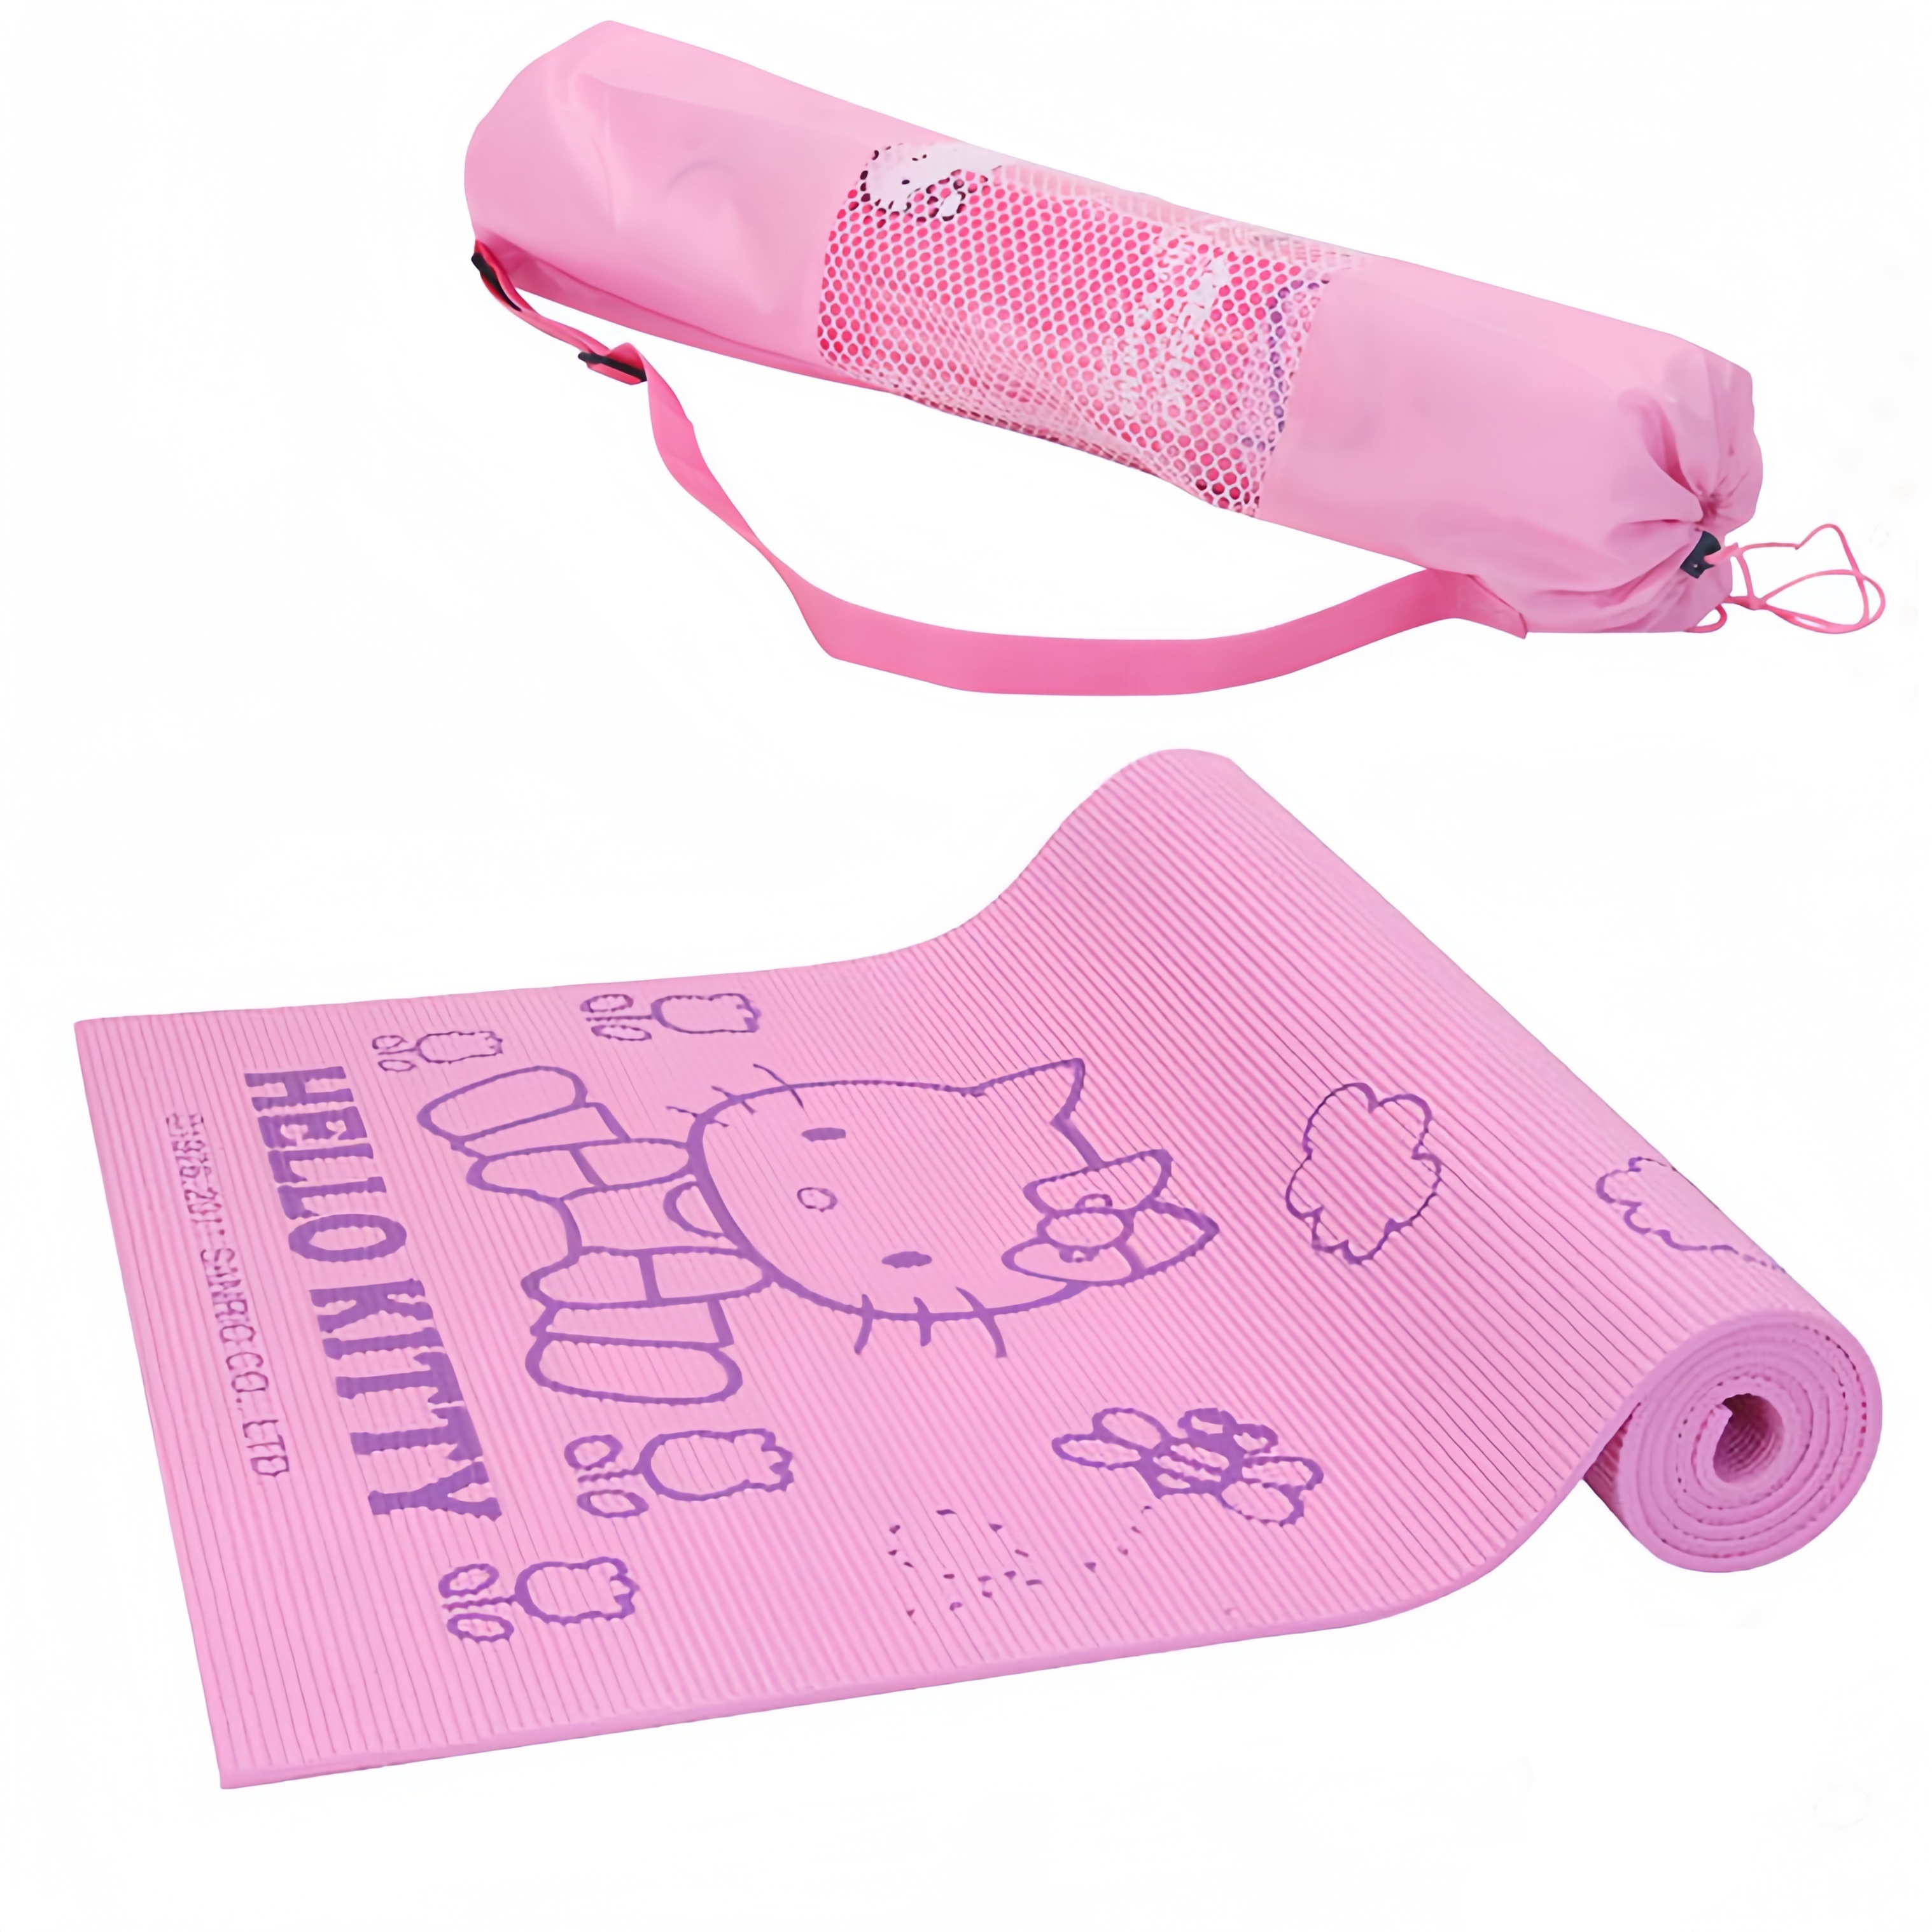 Janeyer-Fitness Hello Kitty Yoga Mat 10 mm Non-Slip for Children